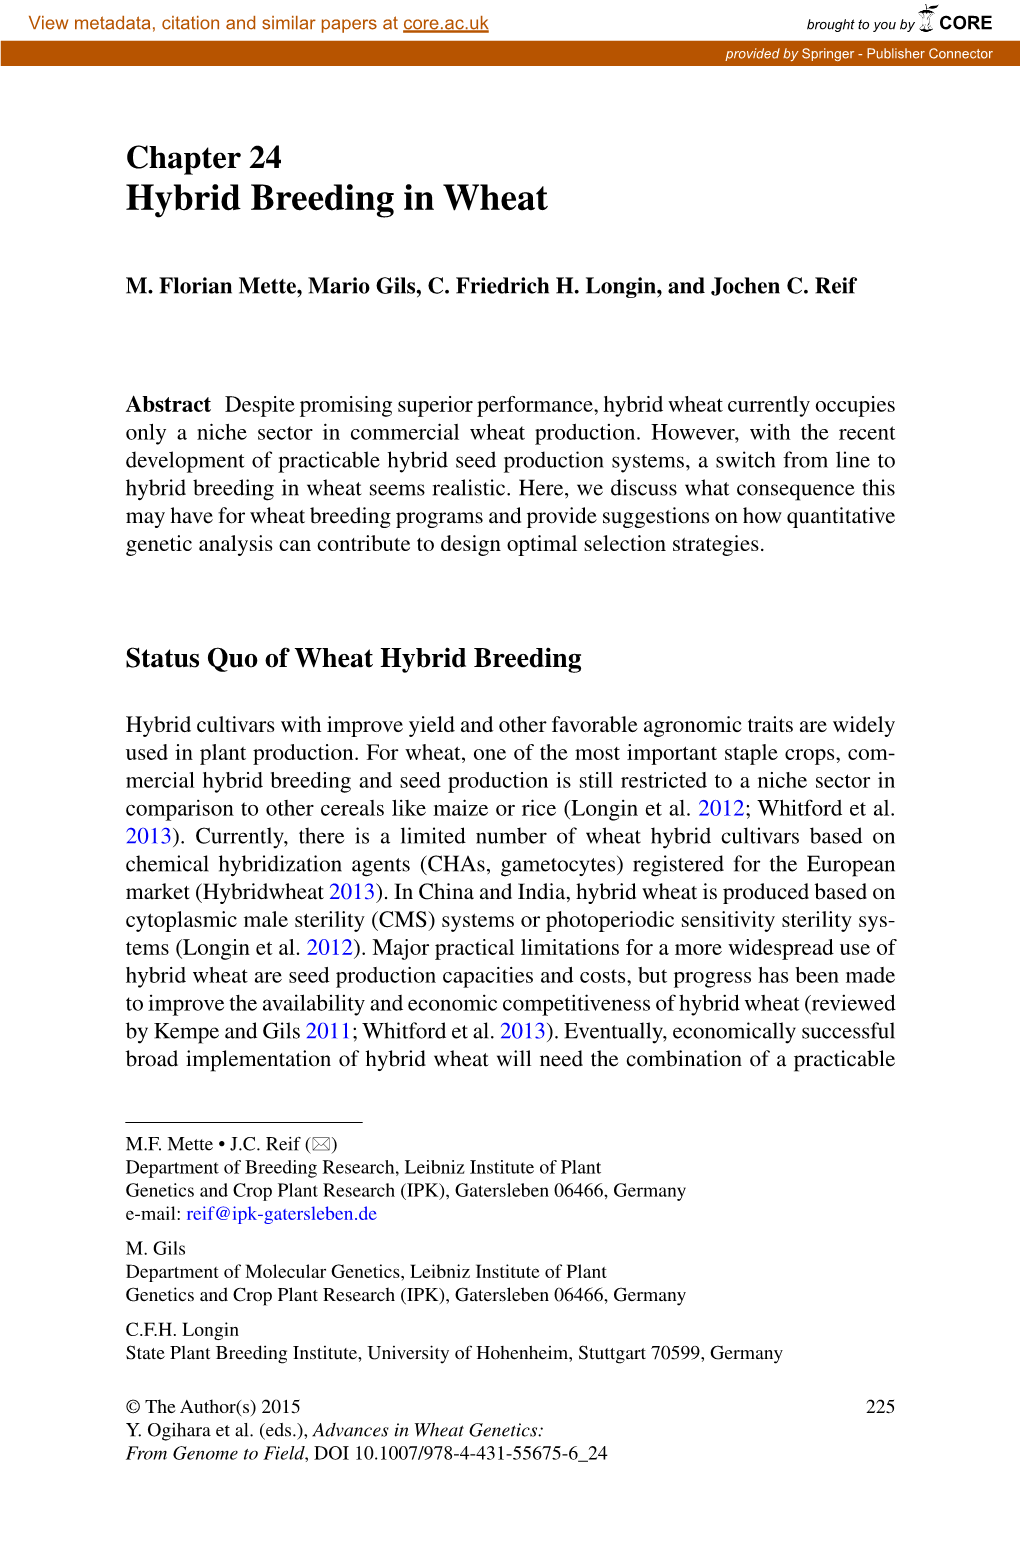 Hybrid Breeding in Wheat